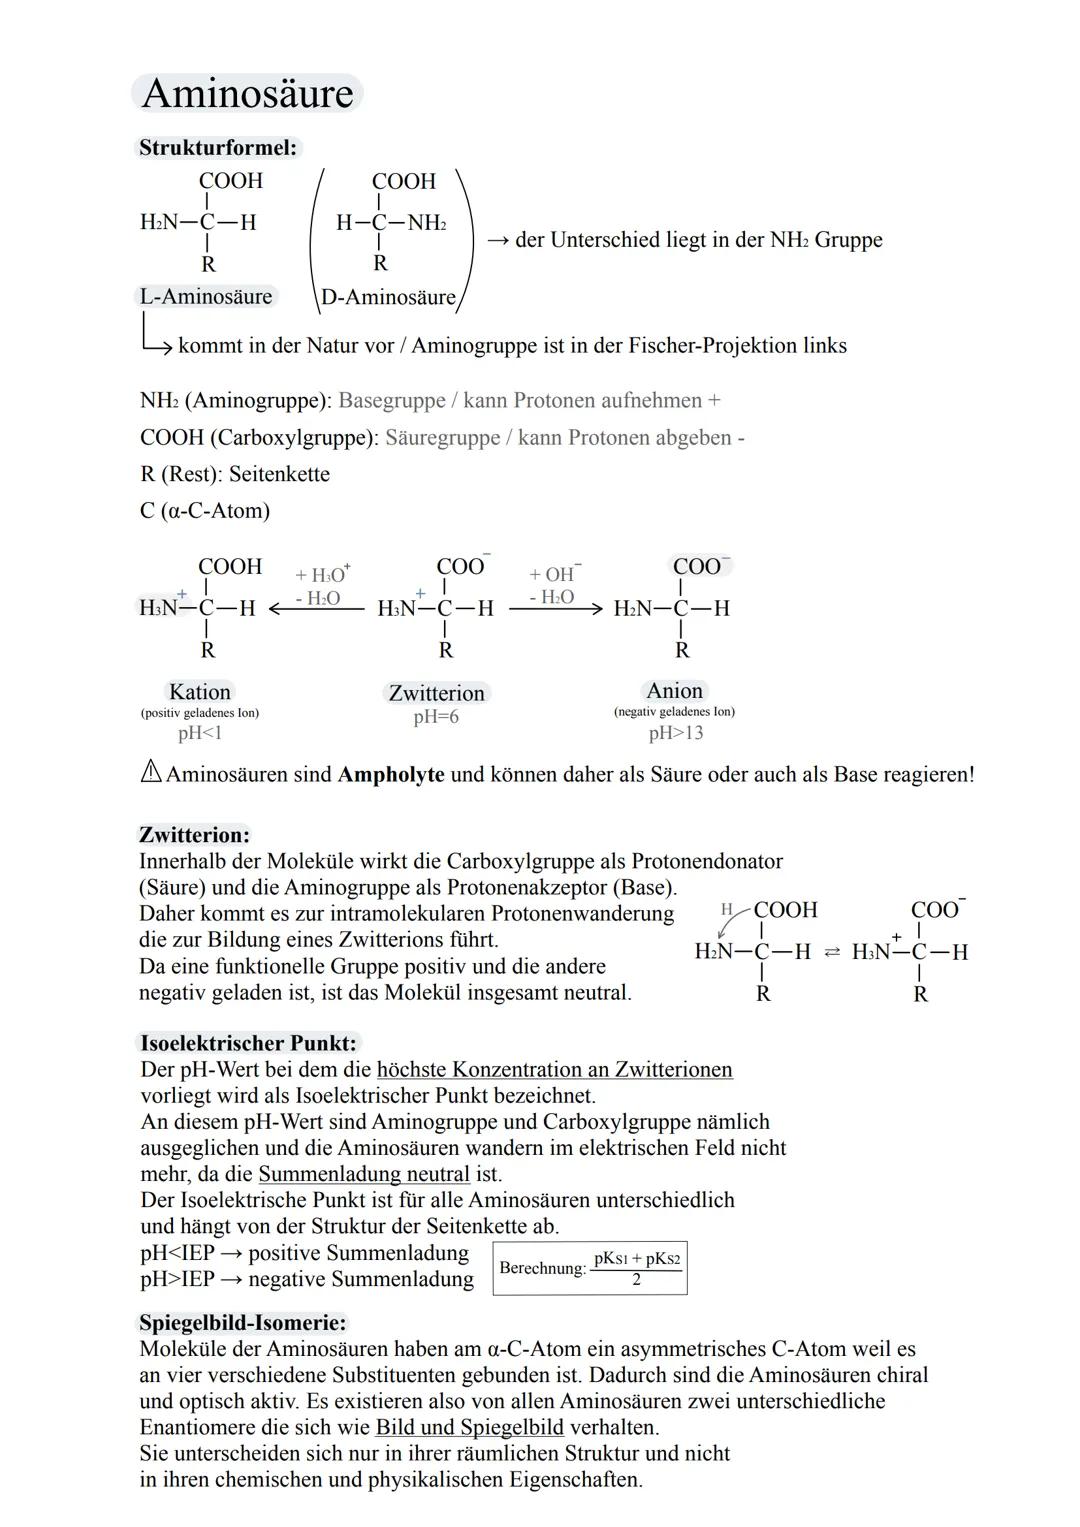 Aminosäure
Strukturformel:
COOH
I
H₂N-C-H
I
R
L-Aminosäure
COOH
I
H-C-NH2
T
R
D-Aminosäure/
kommt in der Natur vor / Aminogruppe ist in der 